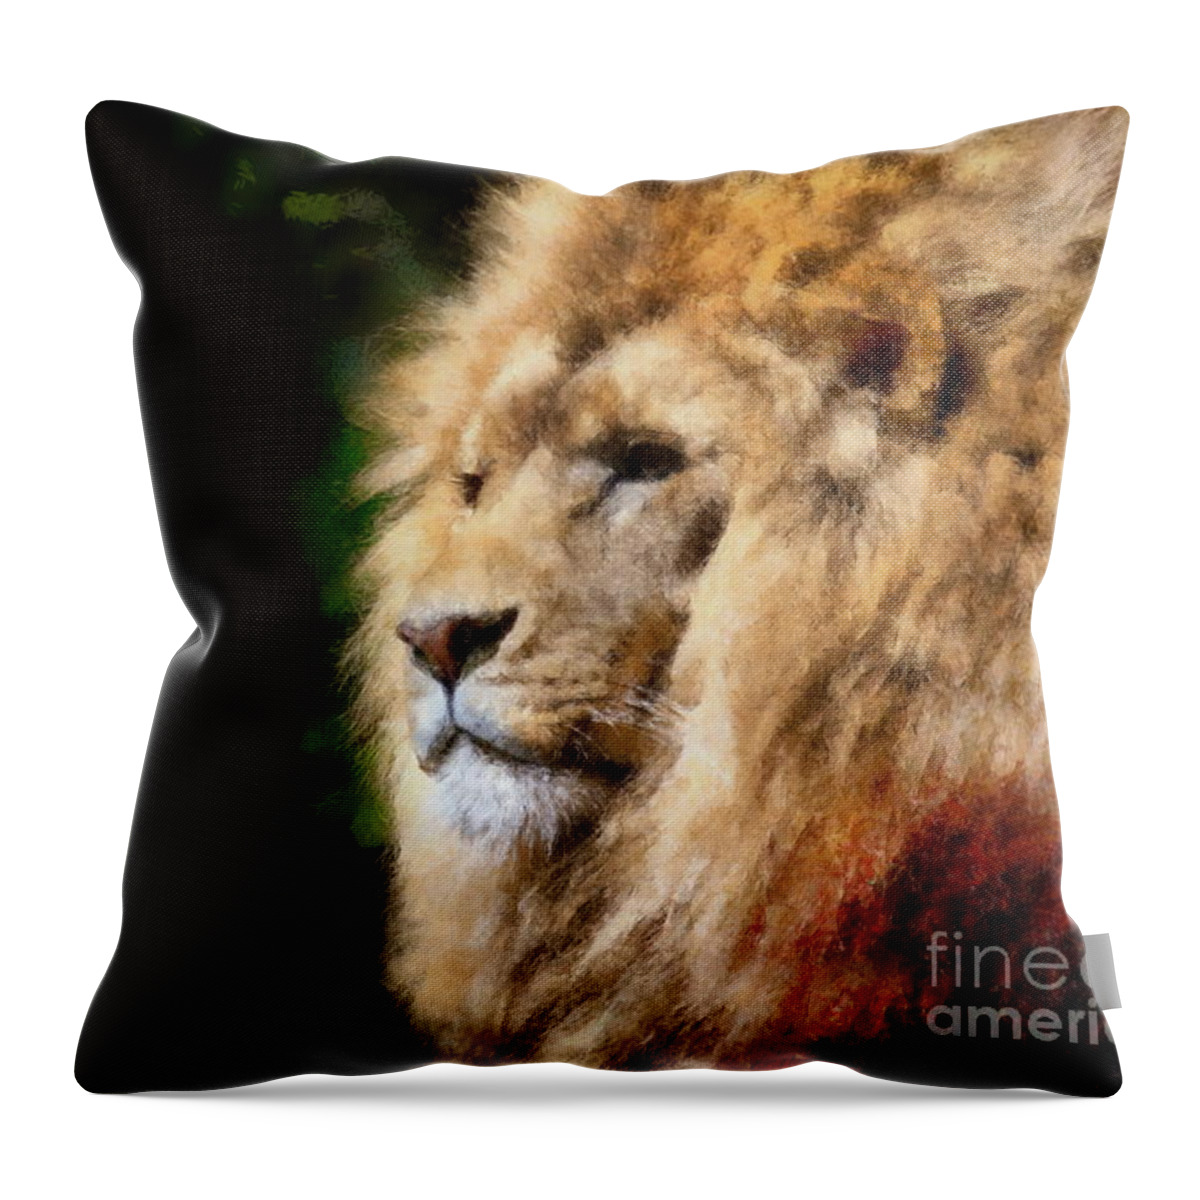 Lion Throw Pillow featuring the digital art Lion #2 by Jerzy Czyz